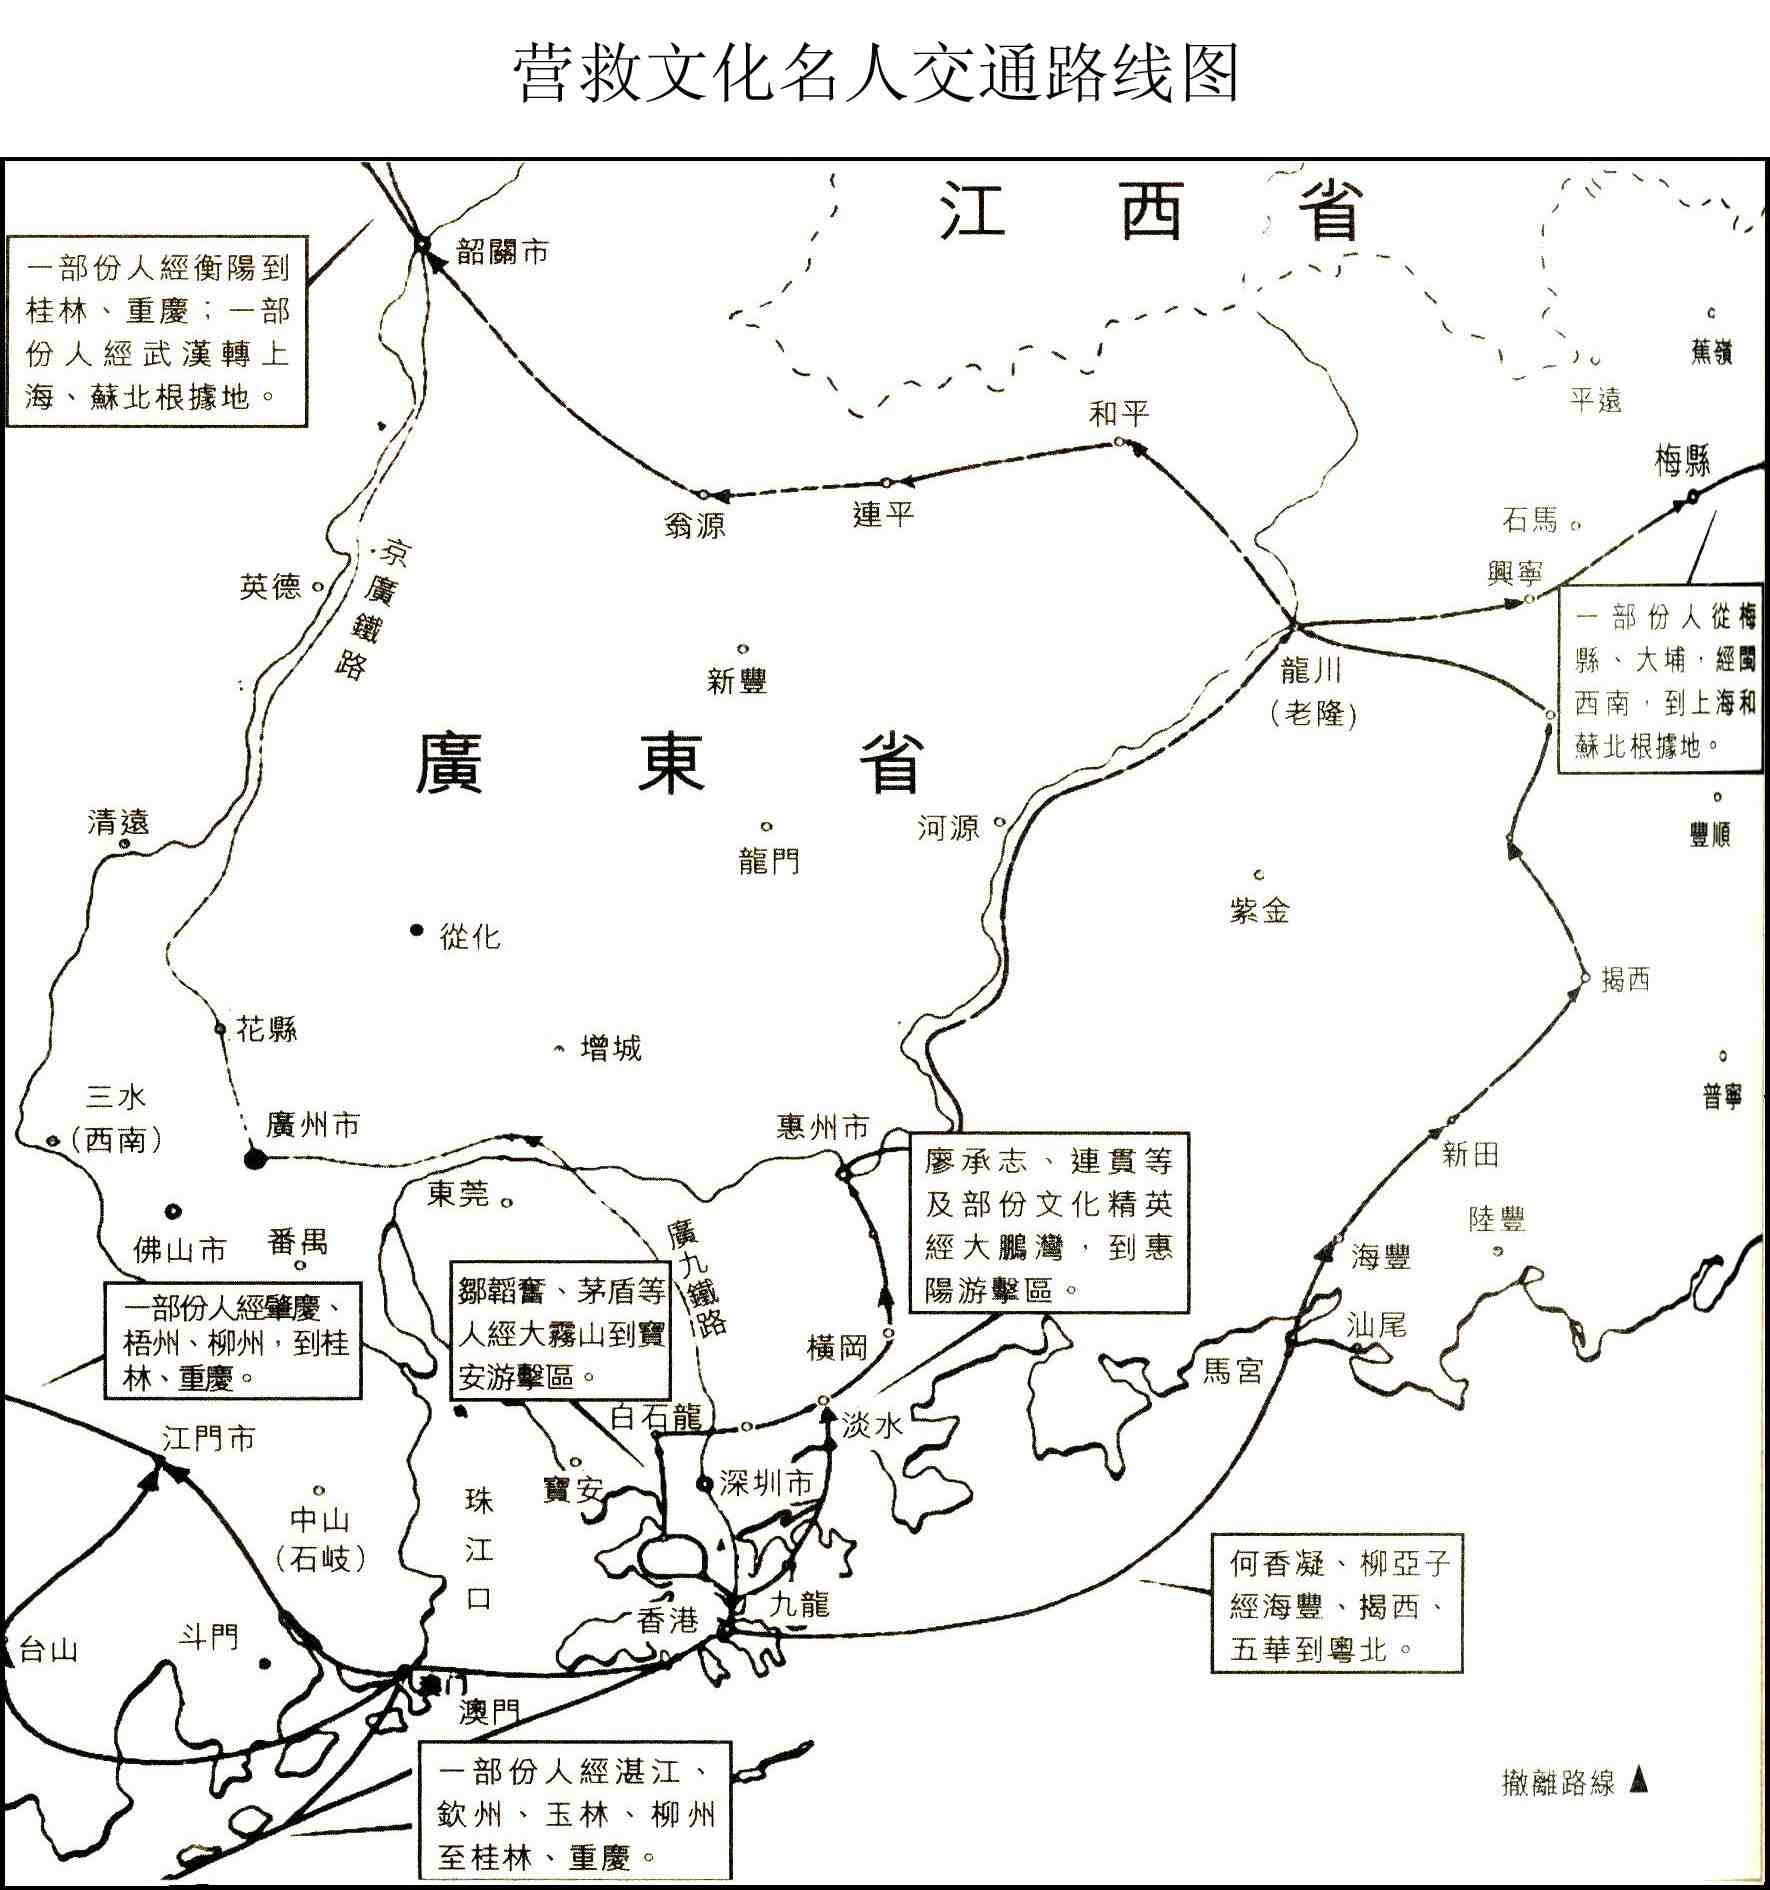 羊台山中国地图路线图片